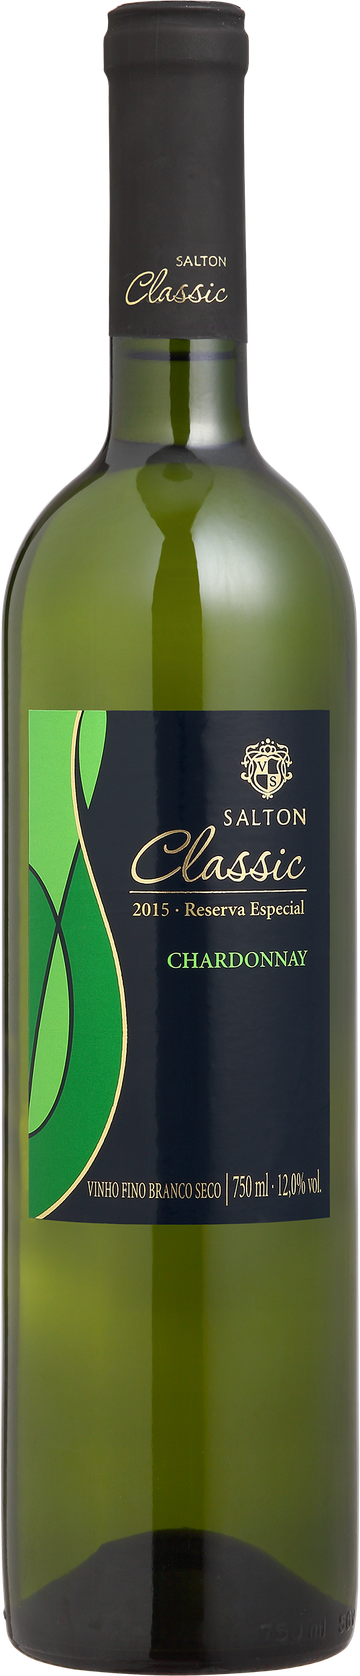 Rótulo Salton Classic Chardonnay